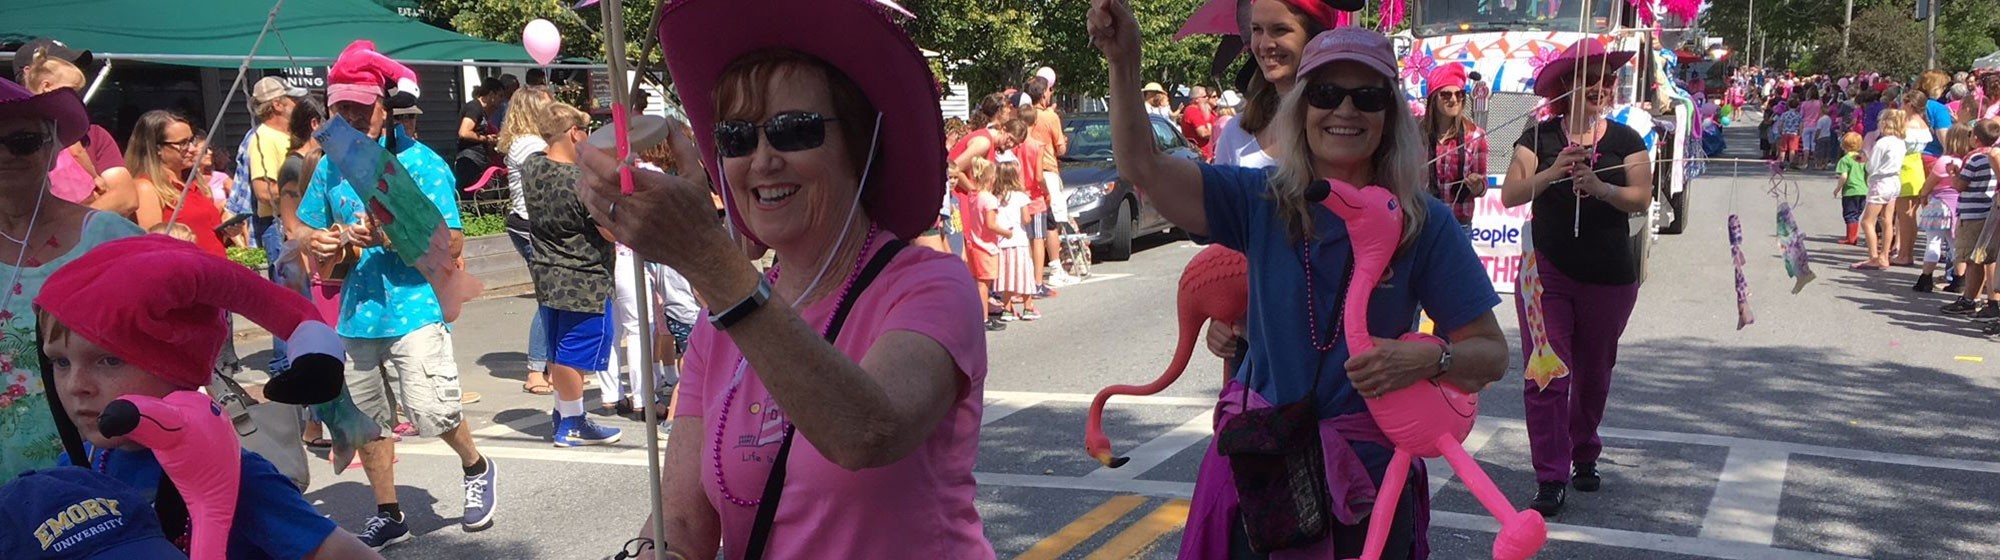 flamingo parade